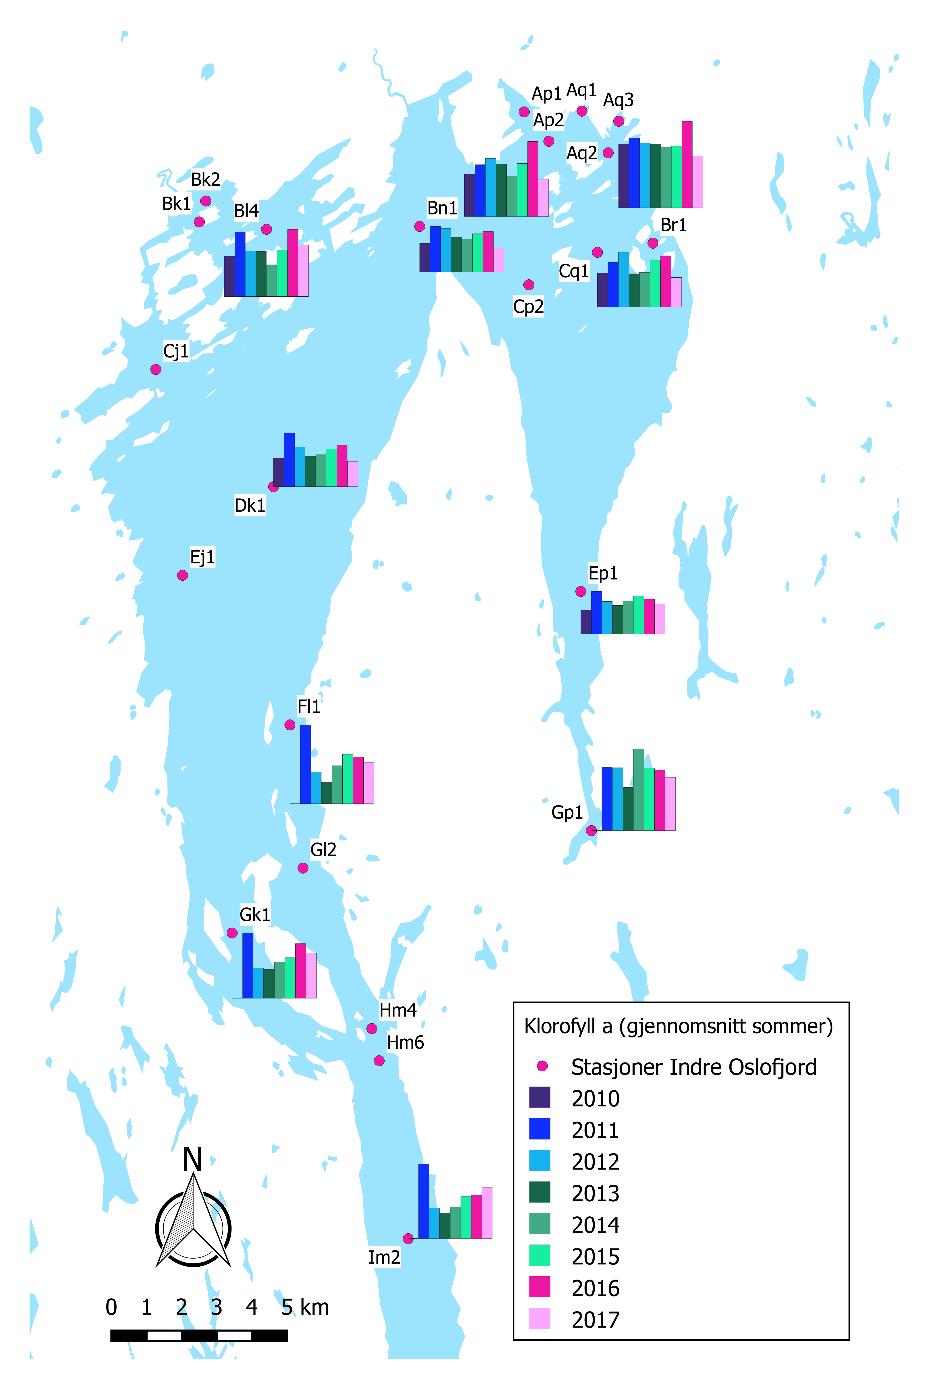 Klorofyll a og planteplankton Figur 8. Årlige variasjoner i gjennomsnittlig konsentrasjon av klorofyll a i sommermånedene (juniaugust) i perioden 2010-2017 på utvalgte stasjoner i Indre Oslofjord.